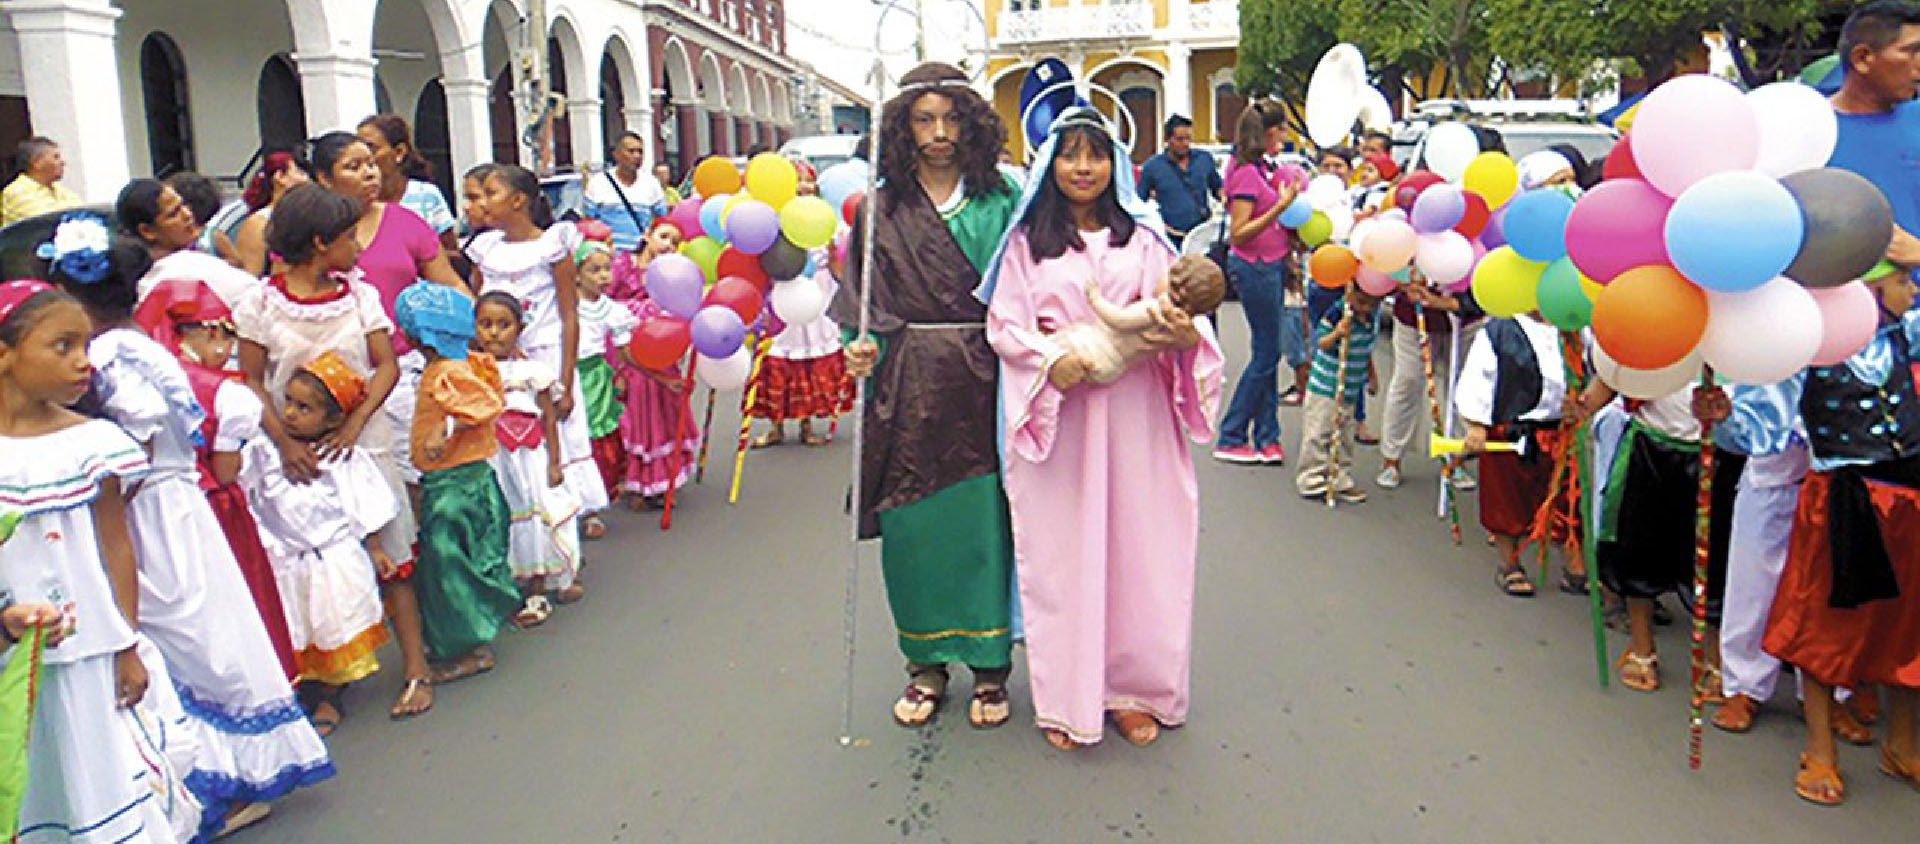 Les "Posadas" sont une procession avec les figures de Joseph et Marie qui parcourent les maisons à la recherche d'un refuge (Posada) pour le bébé Jésus à naître | DR